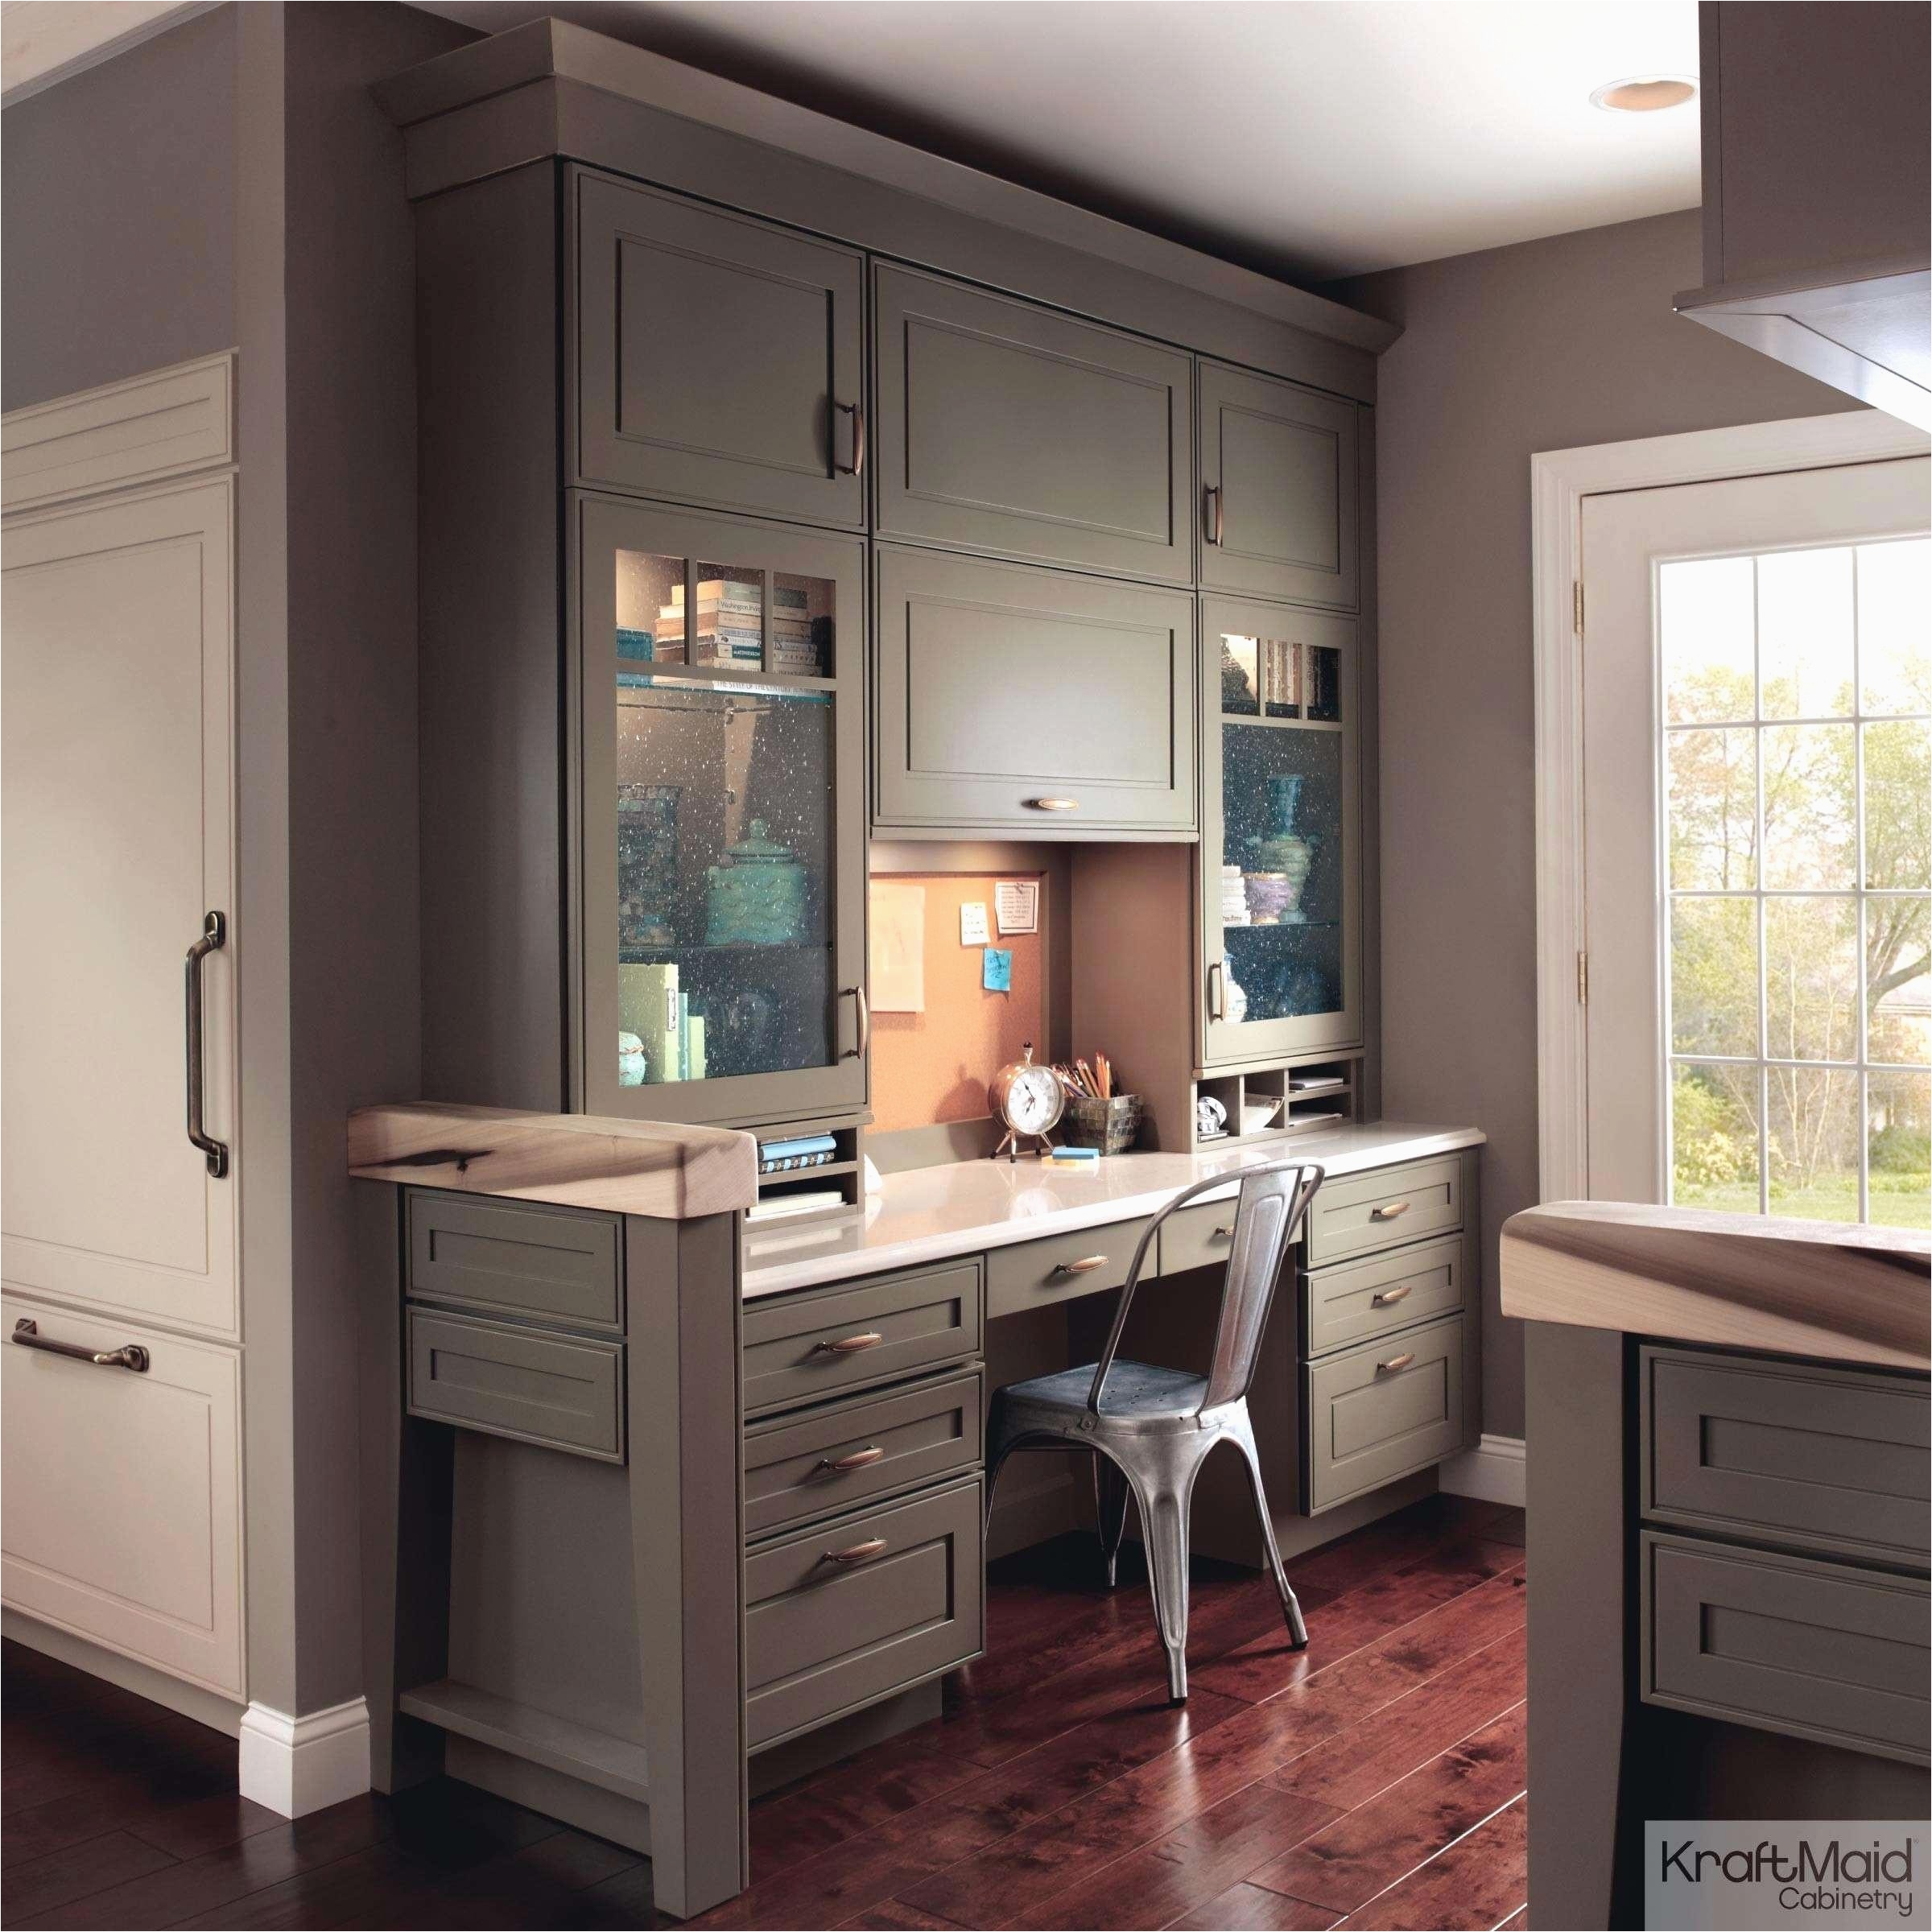 kitchen cabinets with dark wood floors elegant pickled maple kitchen cabinets awesome kitchen cabinet 0d kitchen